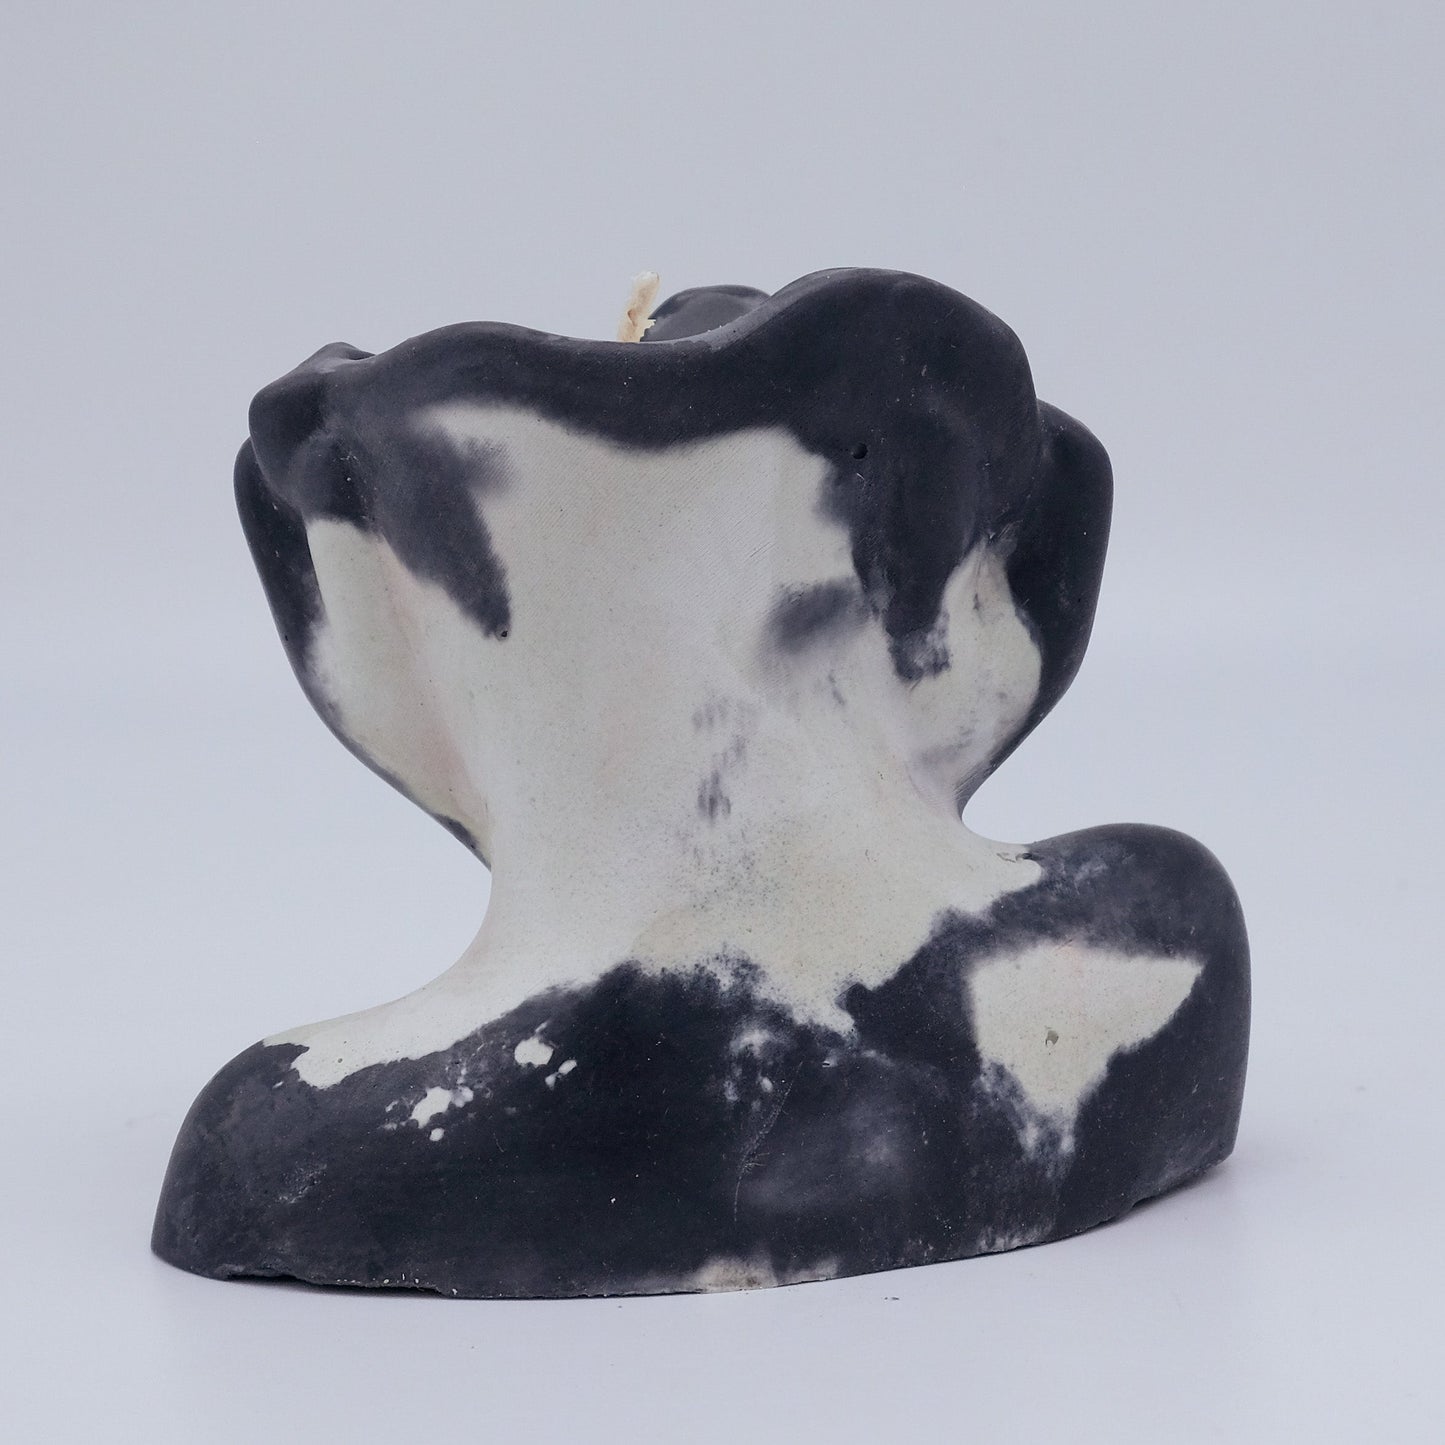 Concrete Candle Decor - Brown & White Marble Vessel/Dark Horse - Tonka and Amaretto Scent